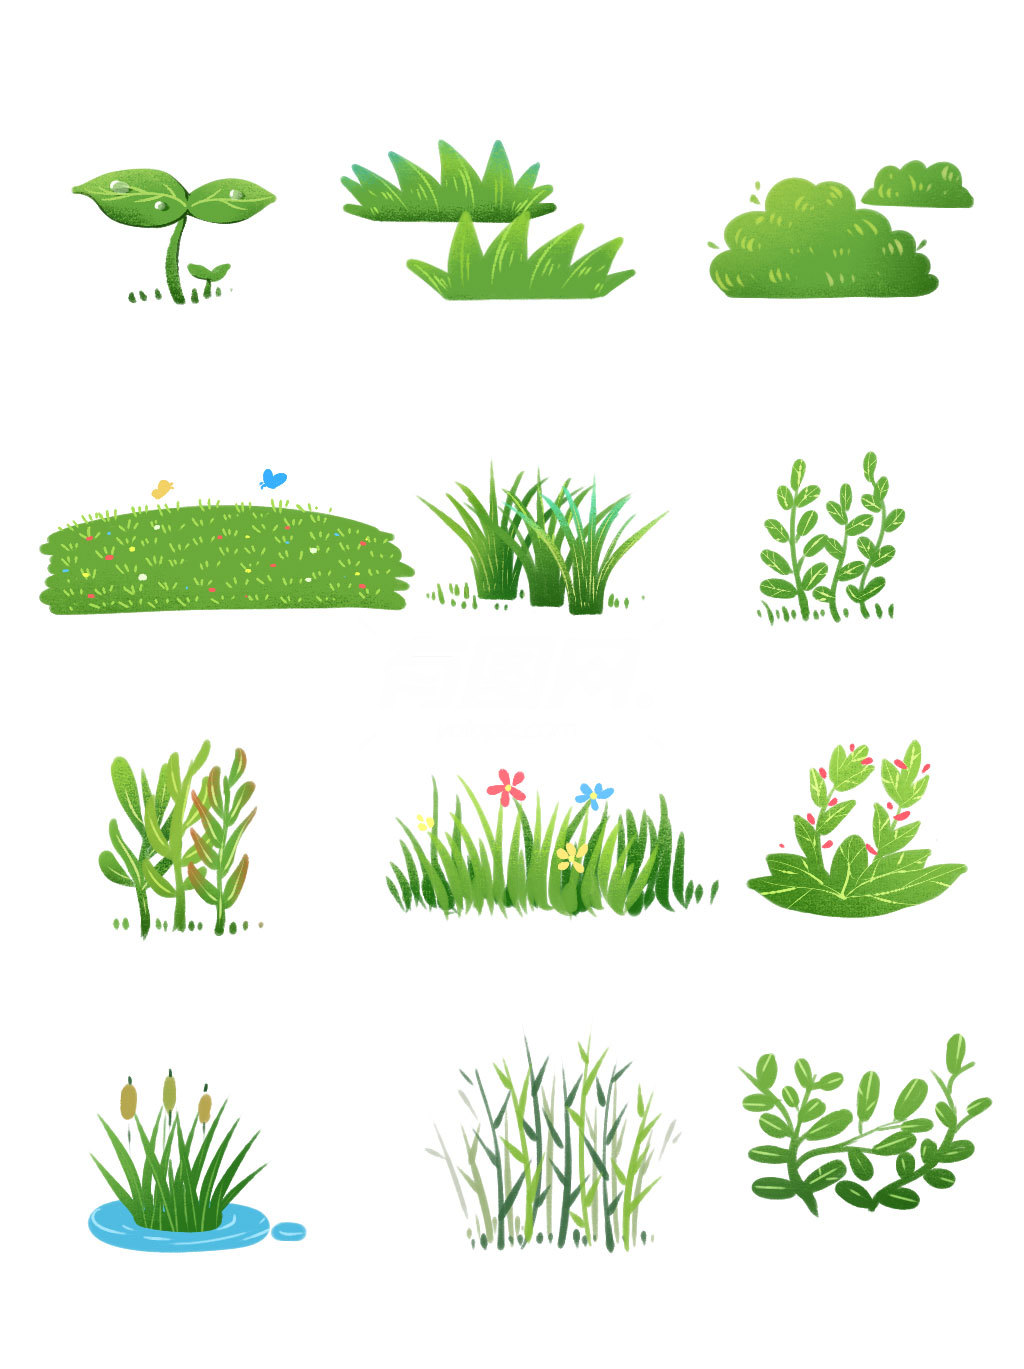 卡通小草草坪 有图网 Adobe Fotolia 免费创意素材平台